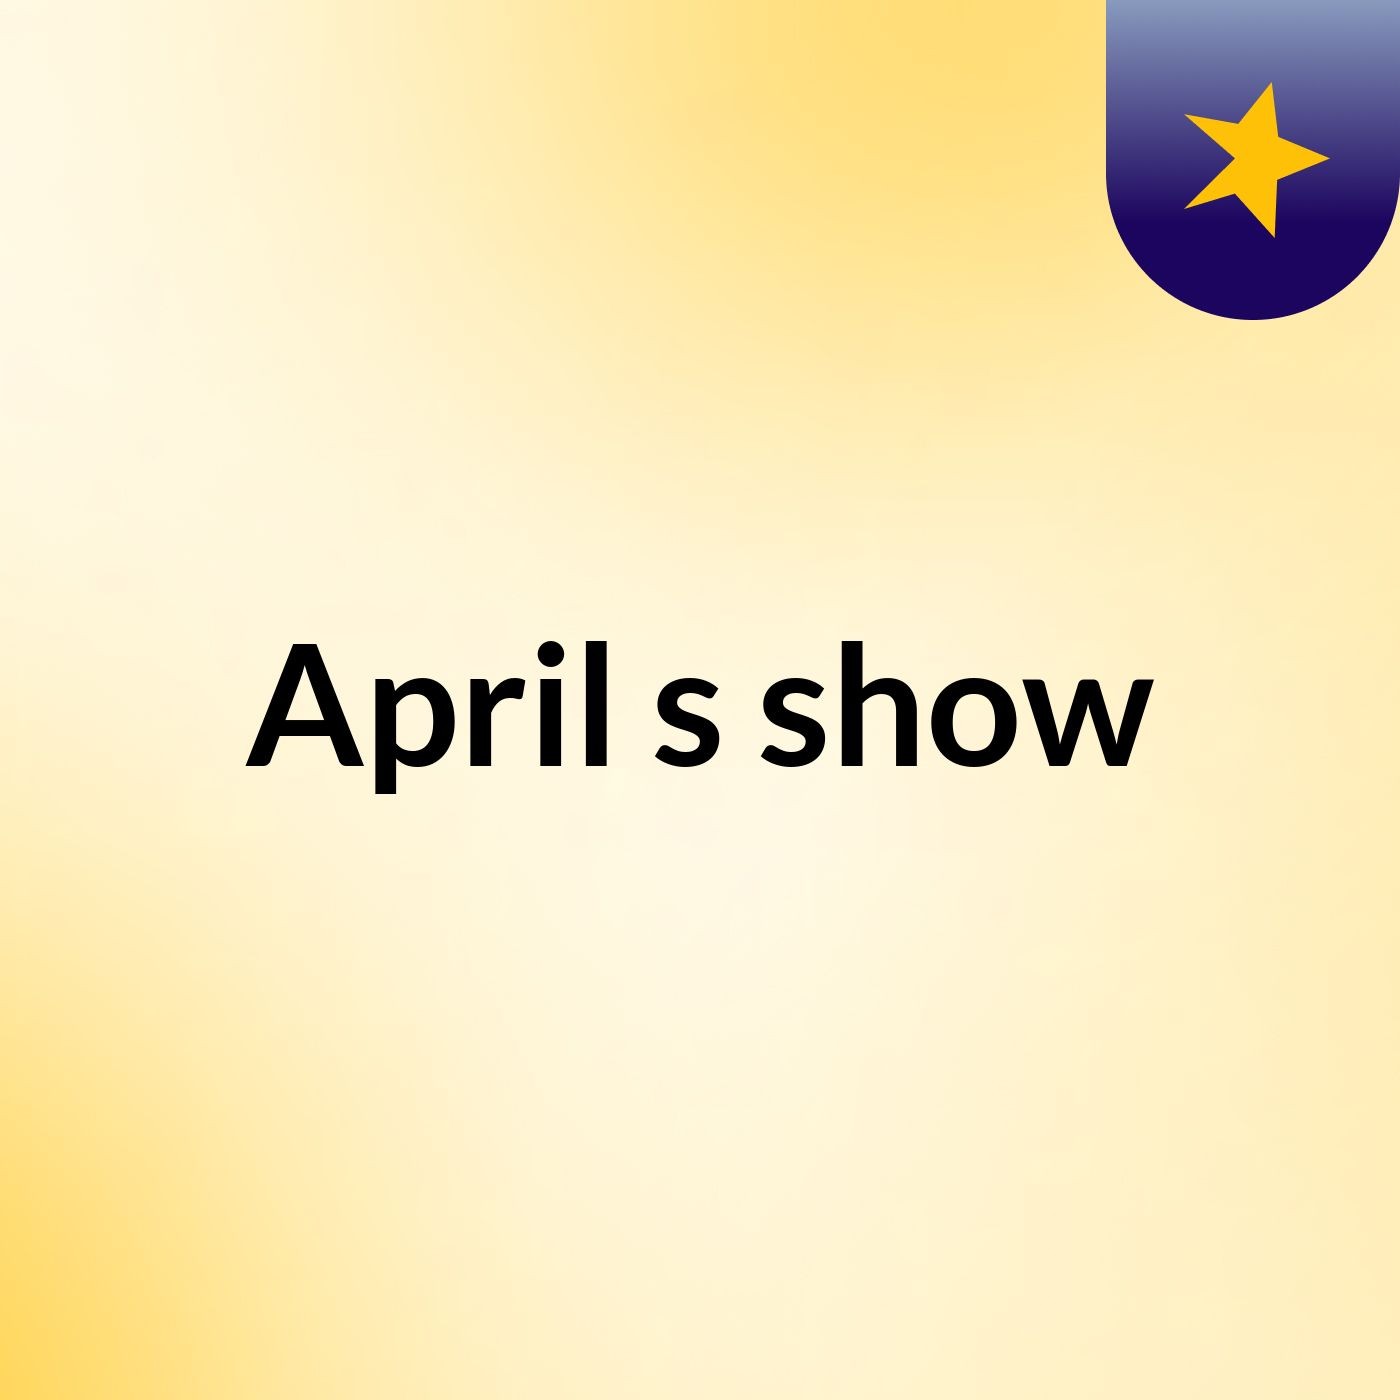 Episode 3 - April's show